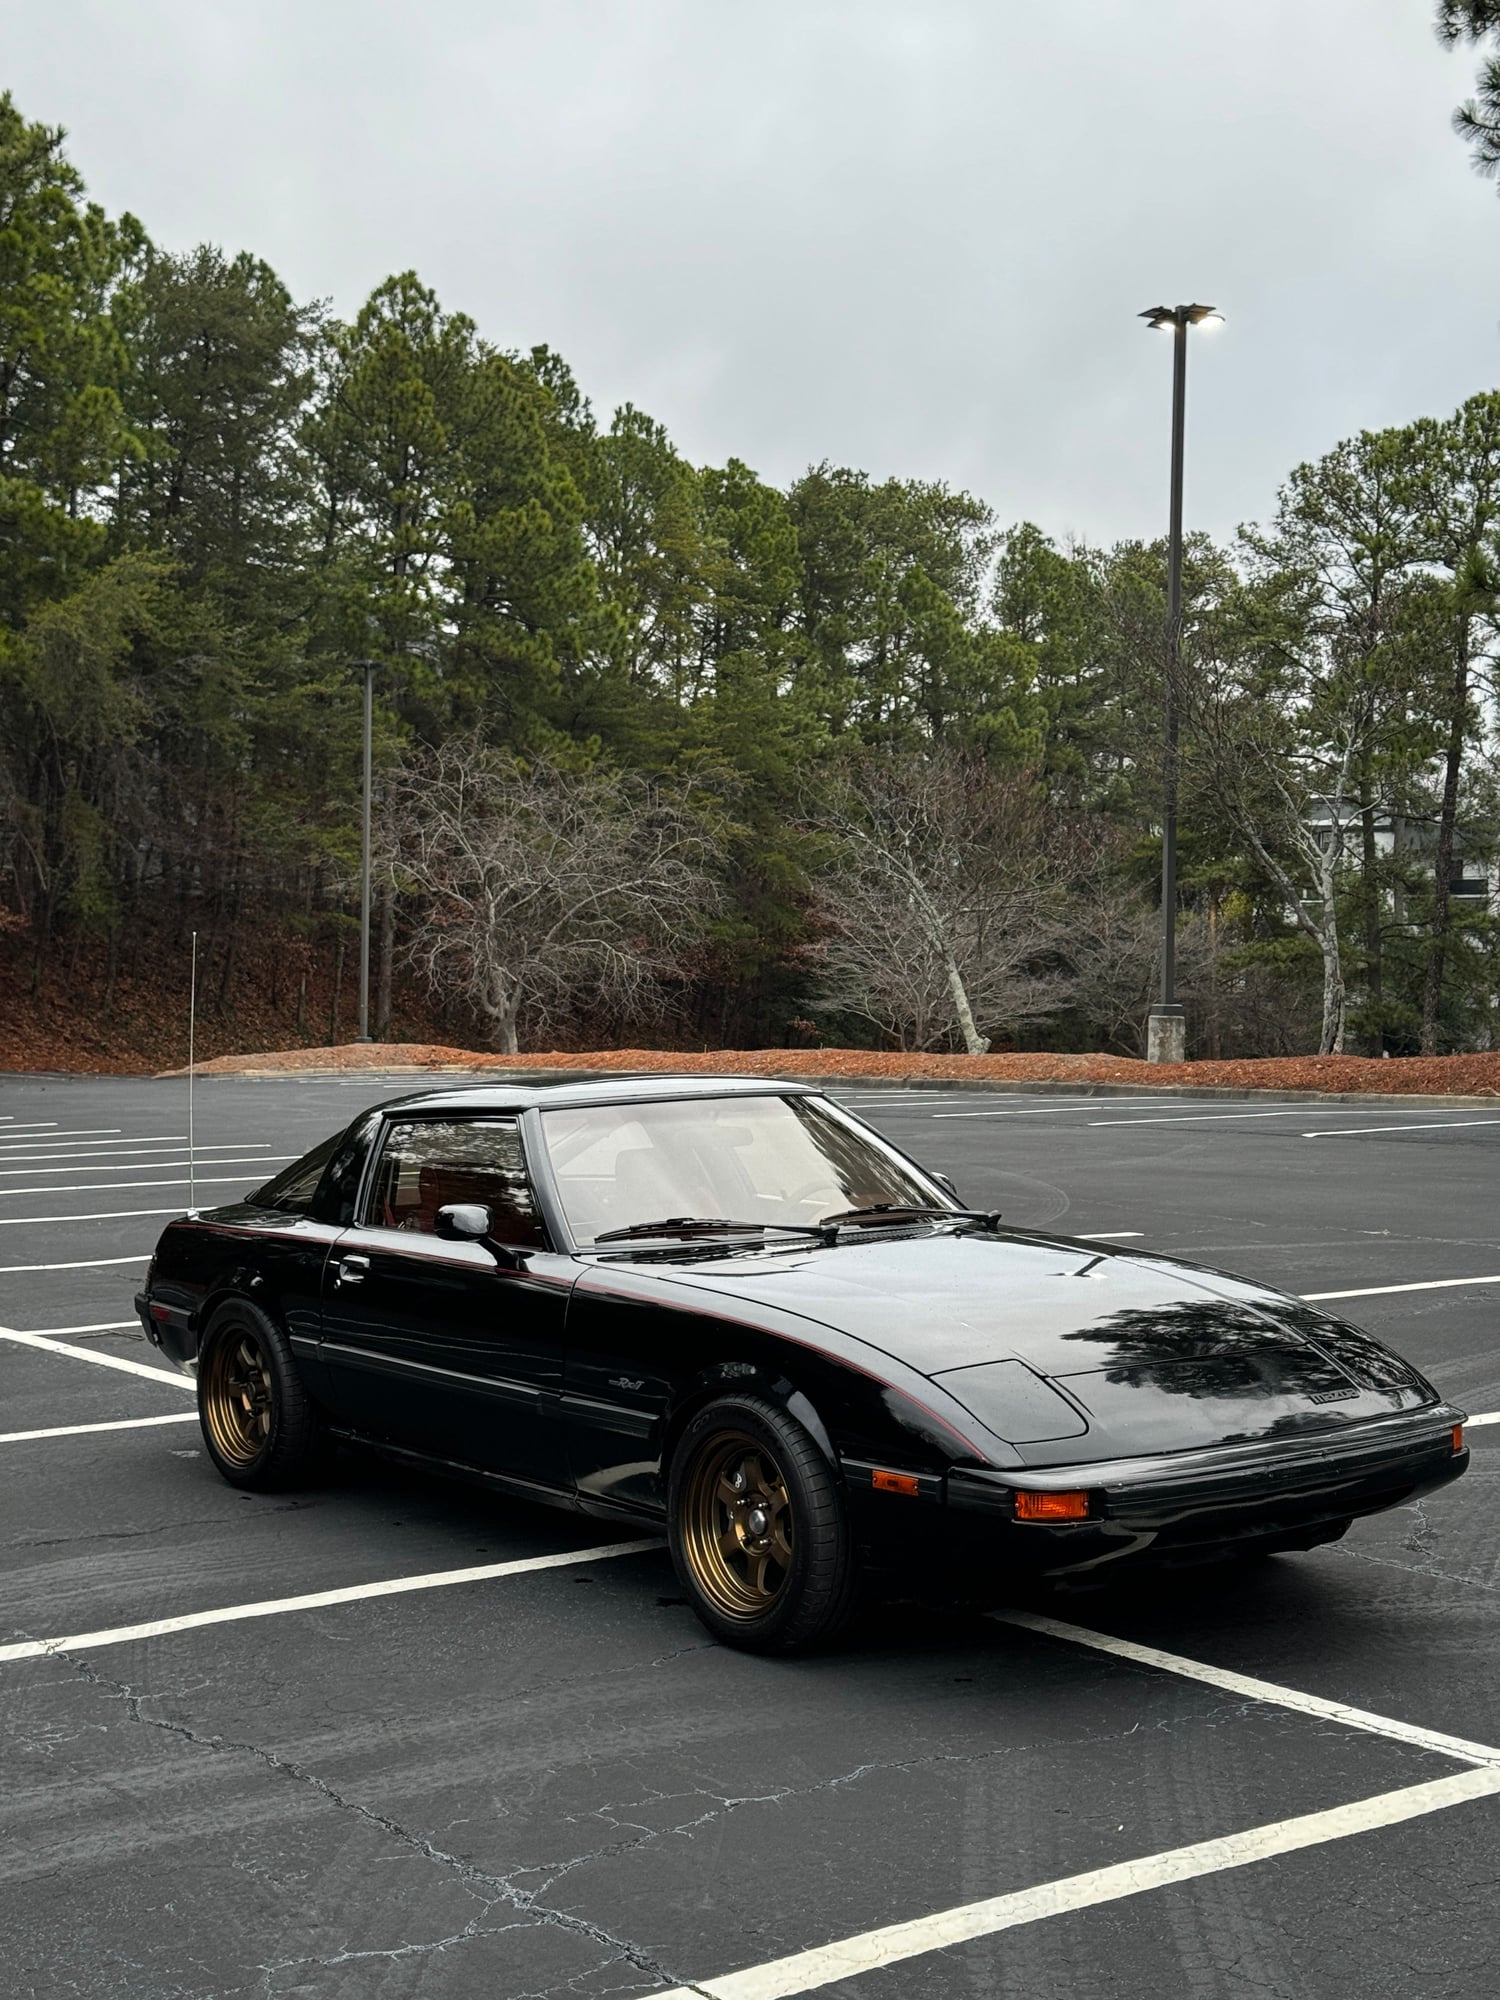 1985 Mazda RX-7 - 1985 Mazda RX-7 GSL-SE - Used - Atlanta, GA 30338, United States